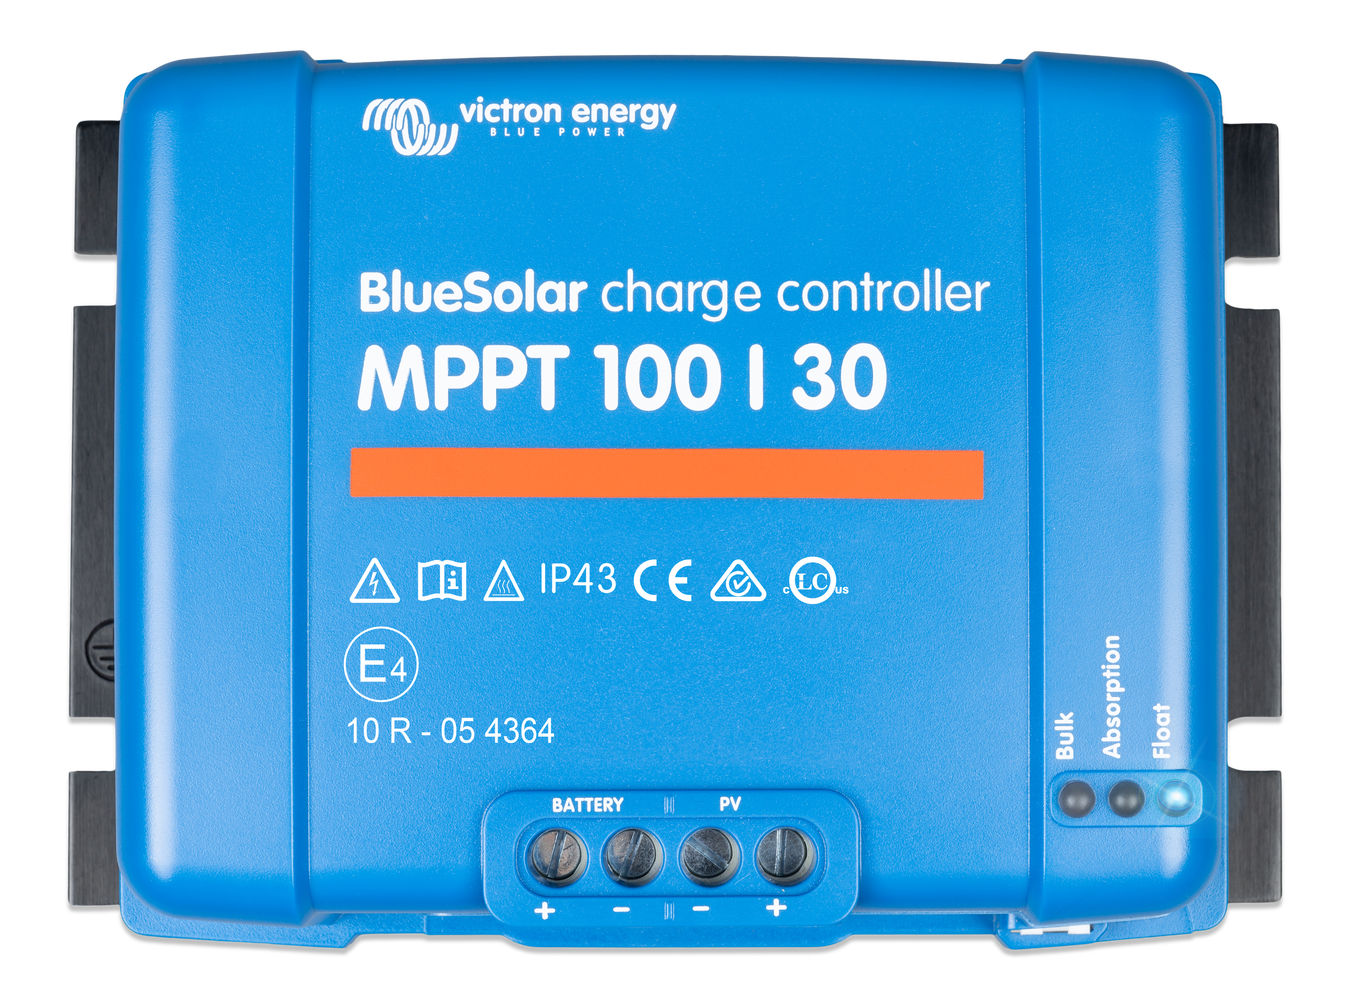 MPP Blue Solar Laderegler MPPT 100/50 von Victron - Akku und